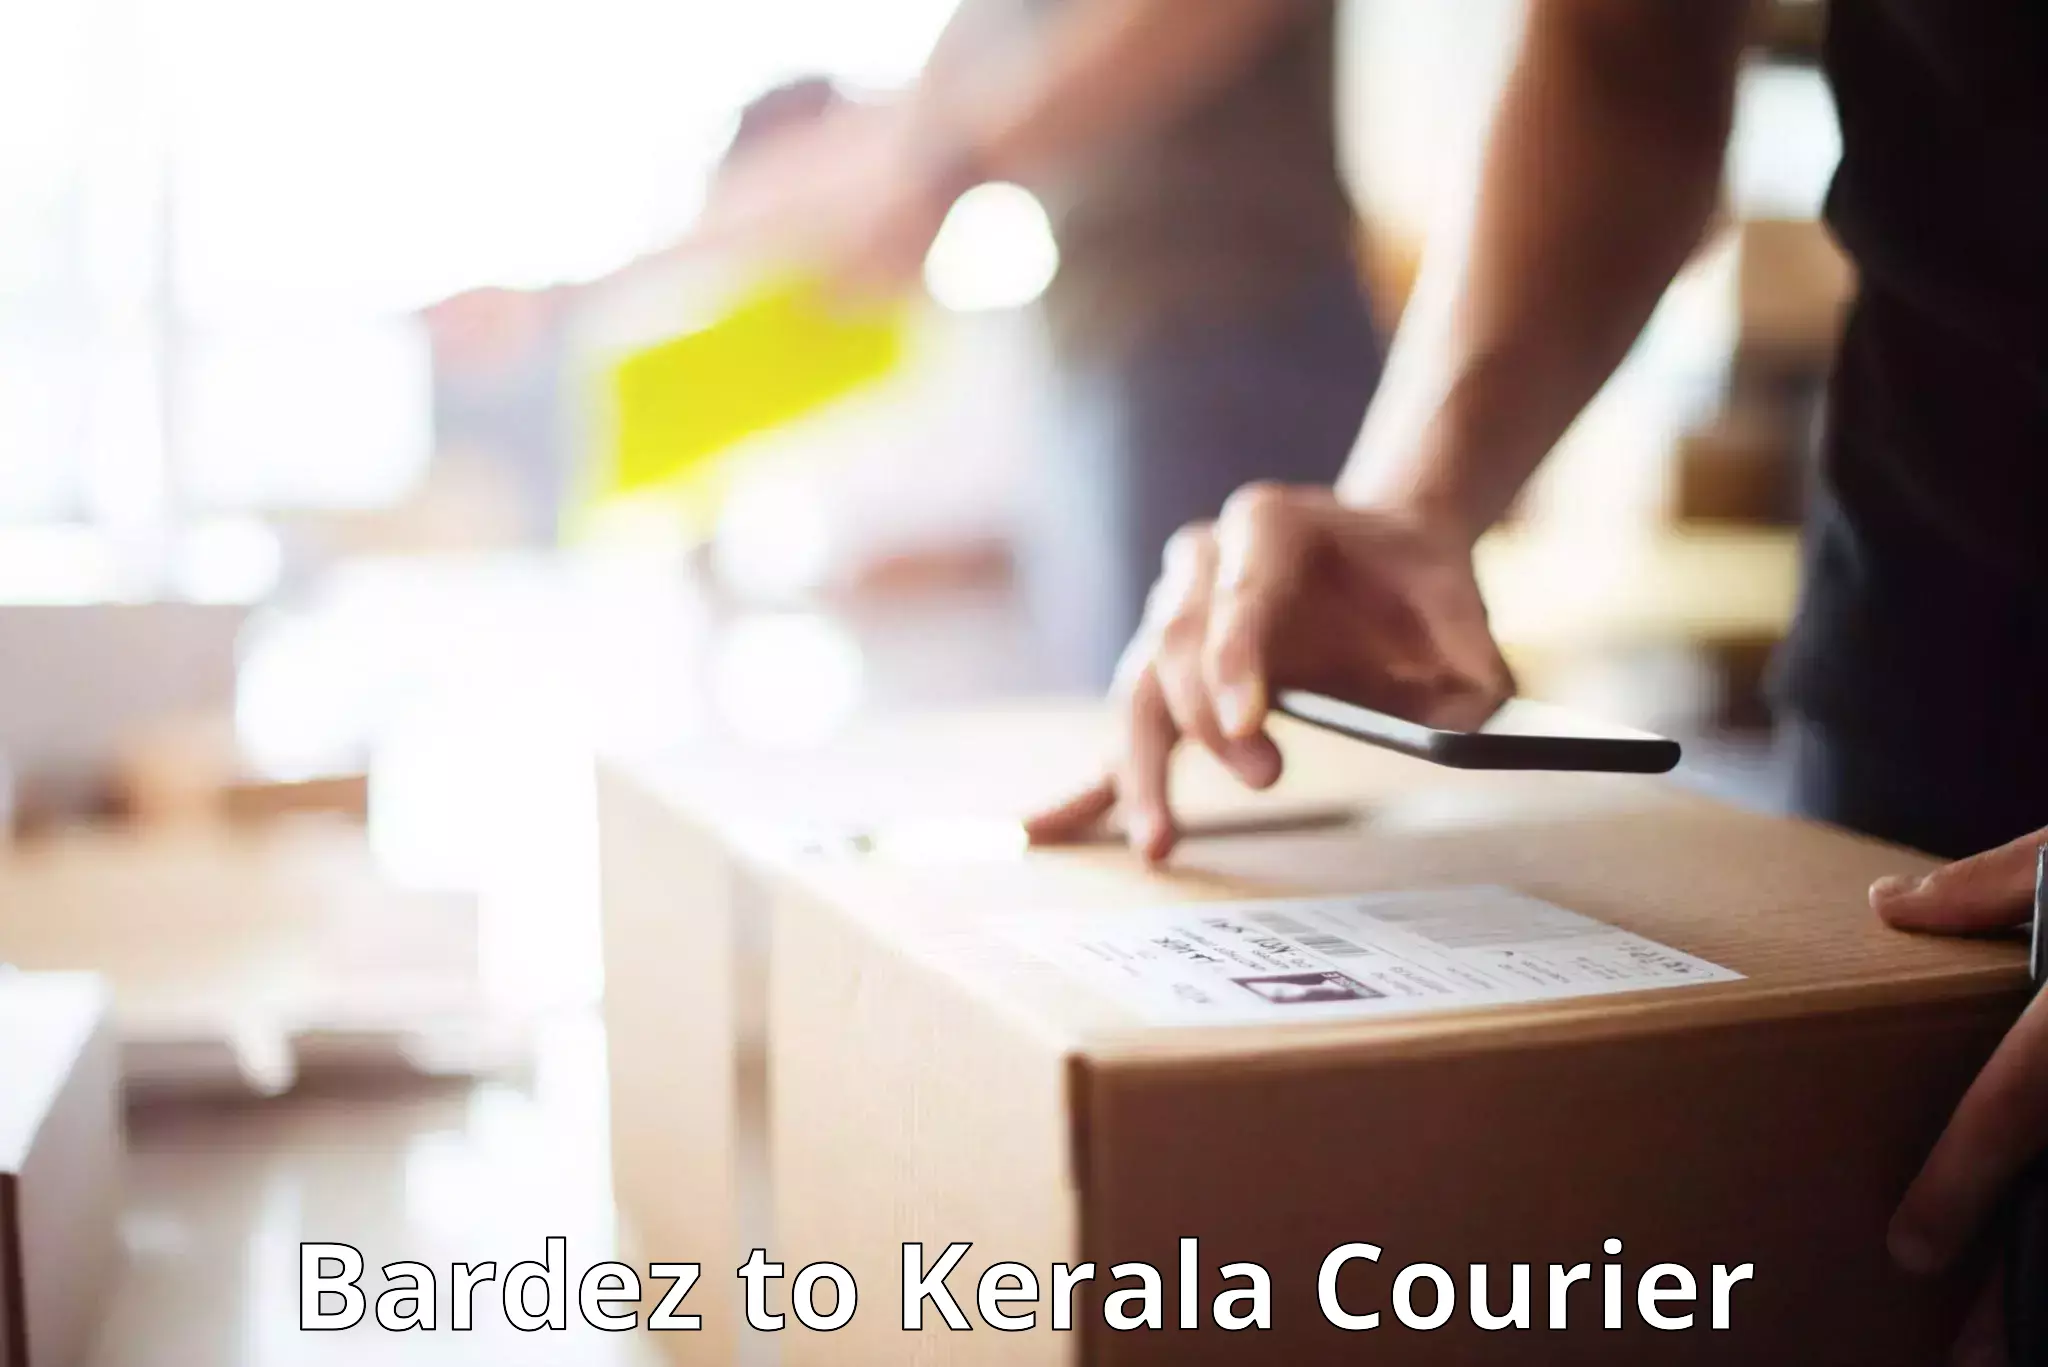 Door-to-door baggage service Bardez to Cochin Port Kochi